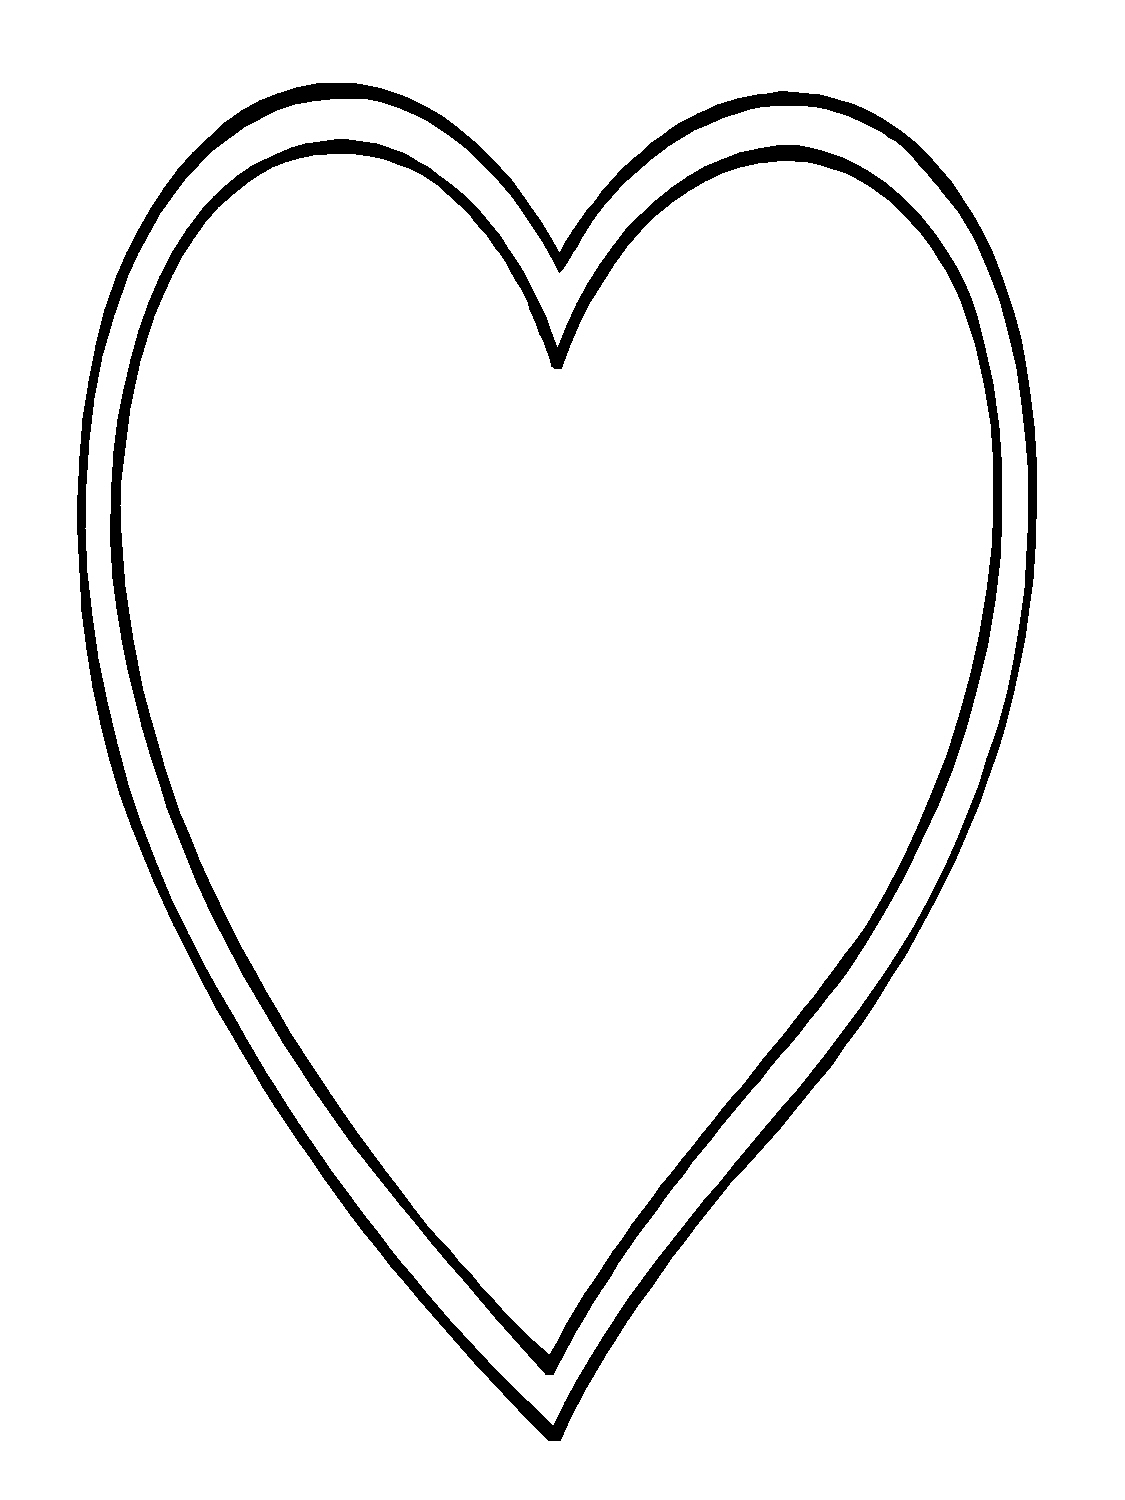 Vector vẽ tay các hình trái tim màu đỏ trên nền màu trắng  Tải hình ảnh  shutterstock  istockphoto 123rf  trong 5 giây